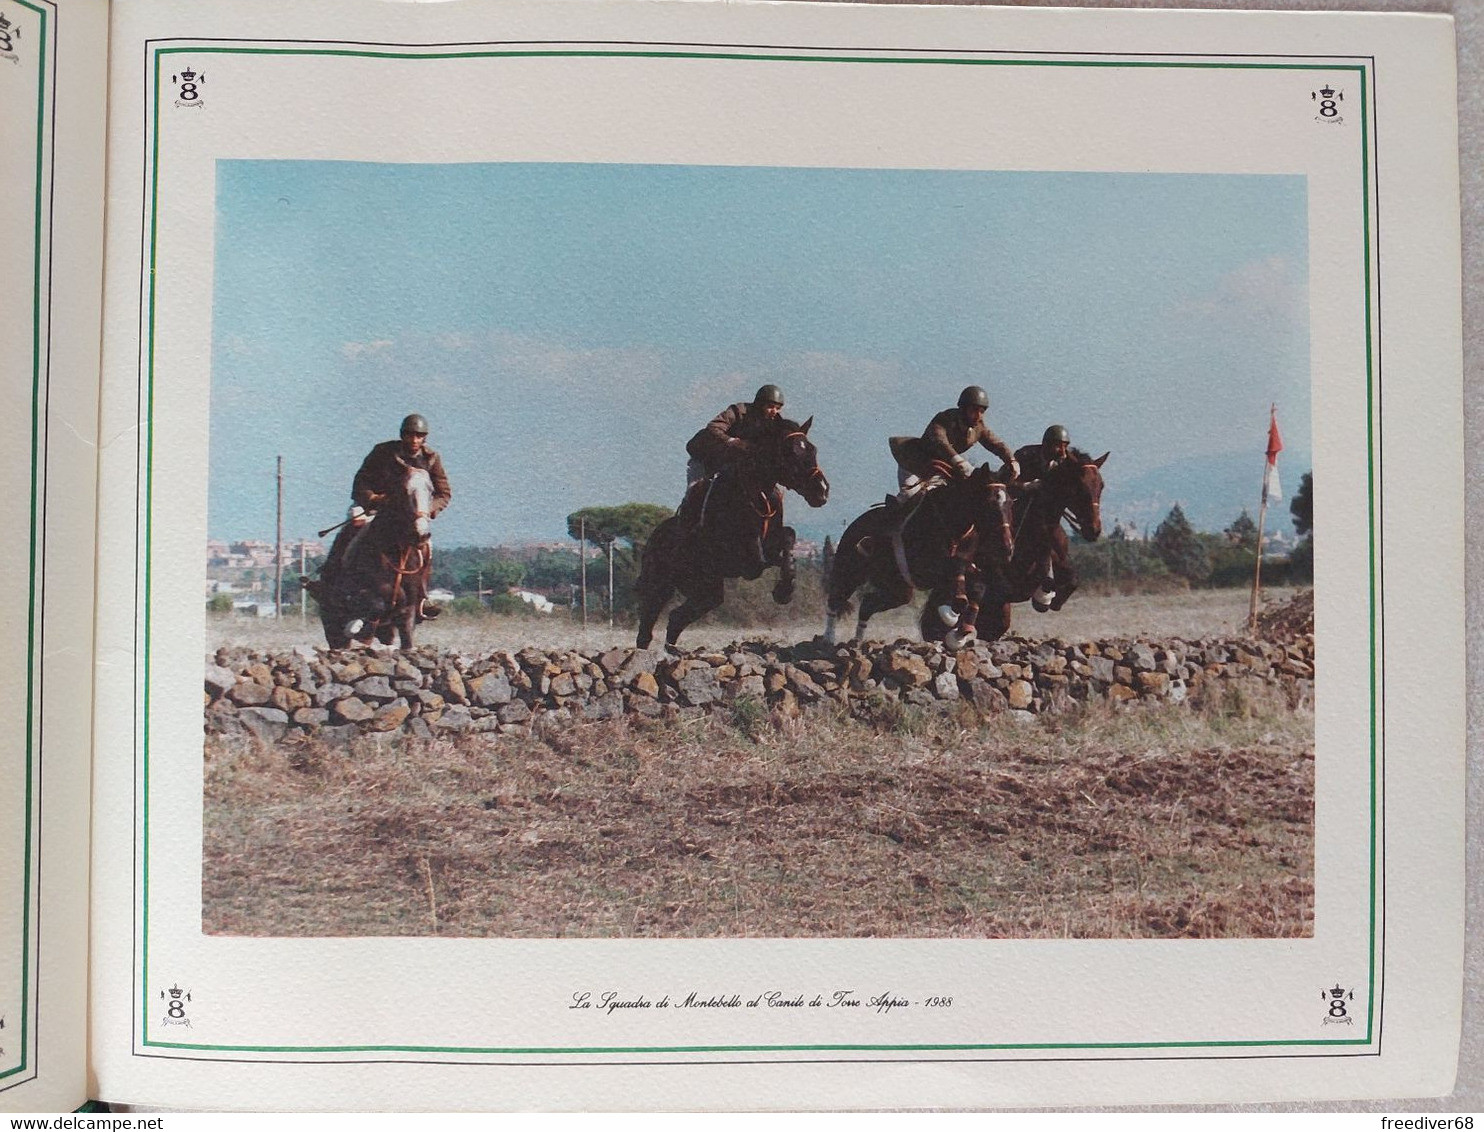 ESERCITO 8° Reggimento Lancieri di Montebello 1989 Cavalleria cordino ORIGINALE RARO Roma Montelibretti Quirinale